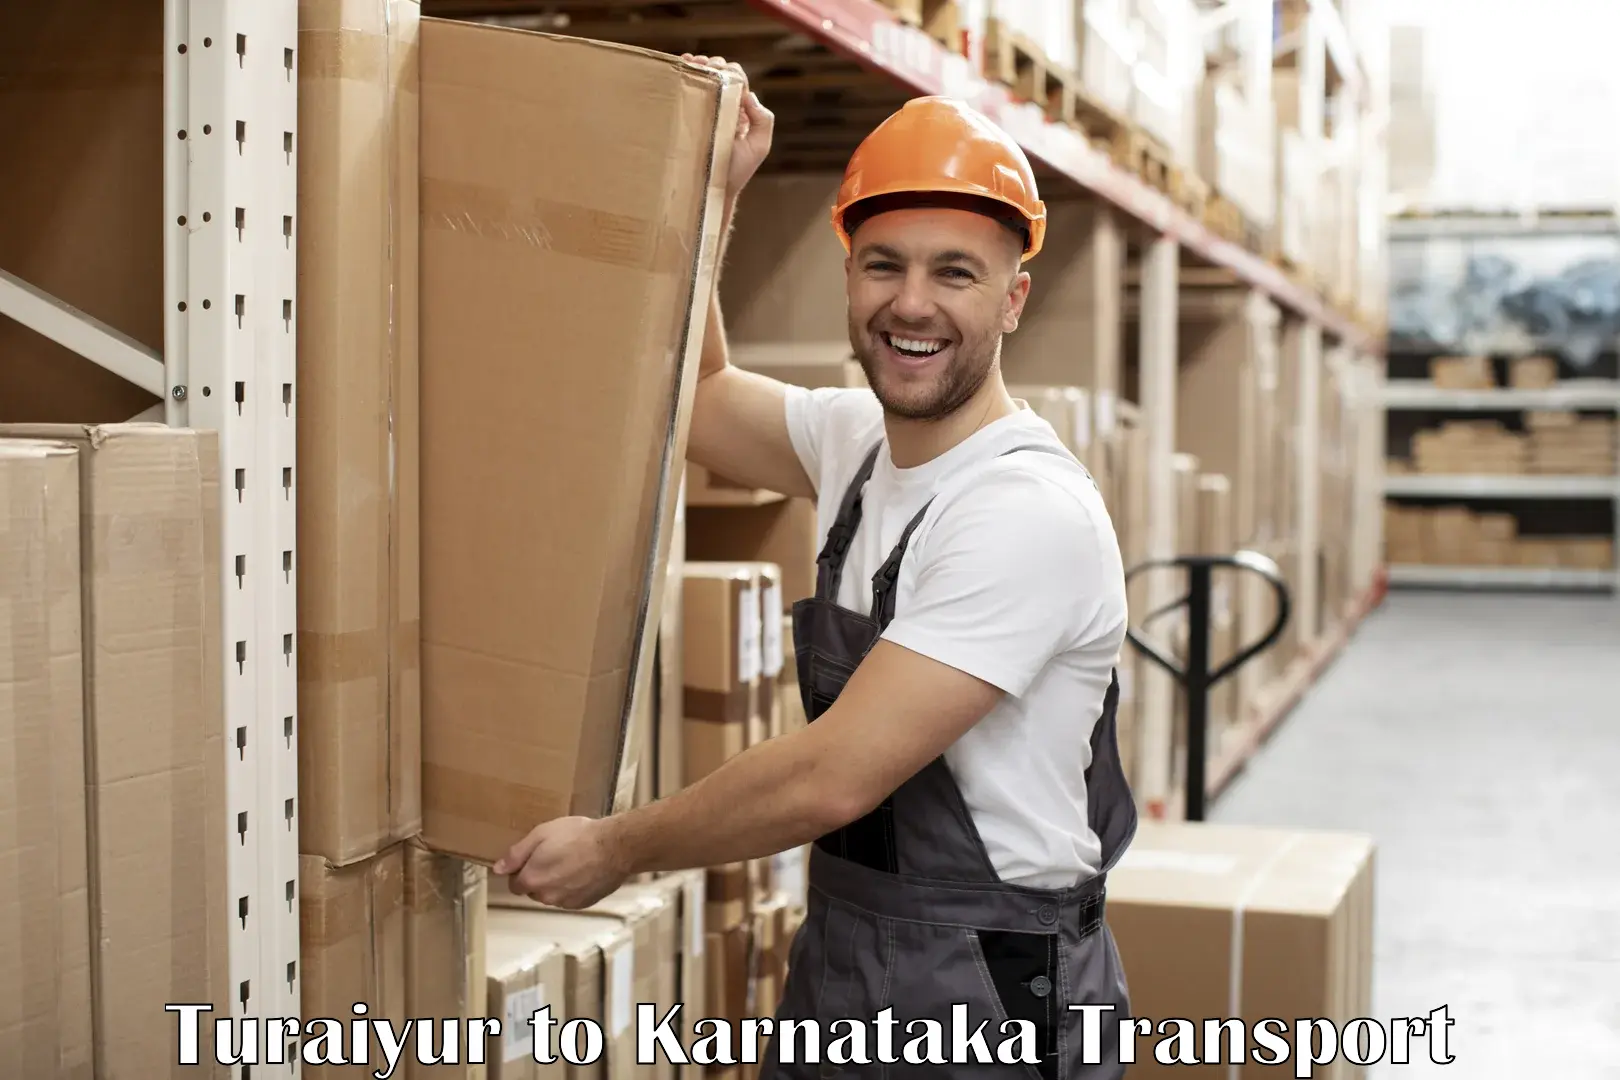 Delivery service Turaiyur to Anavatti